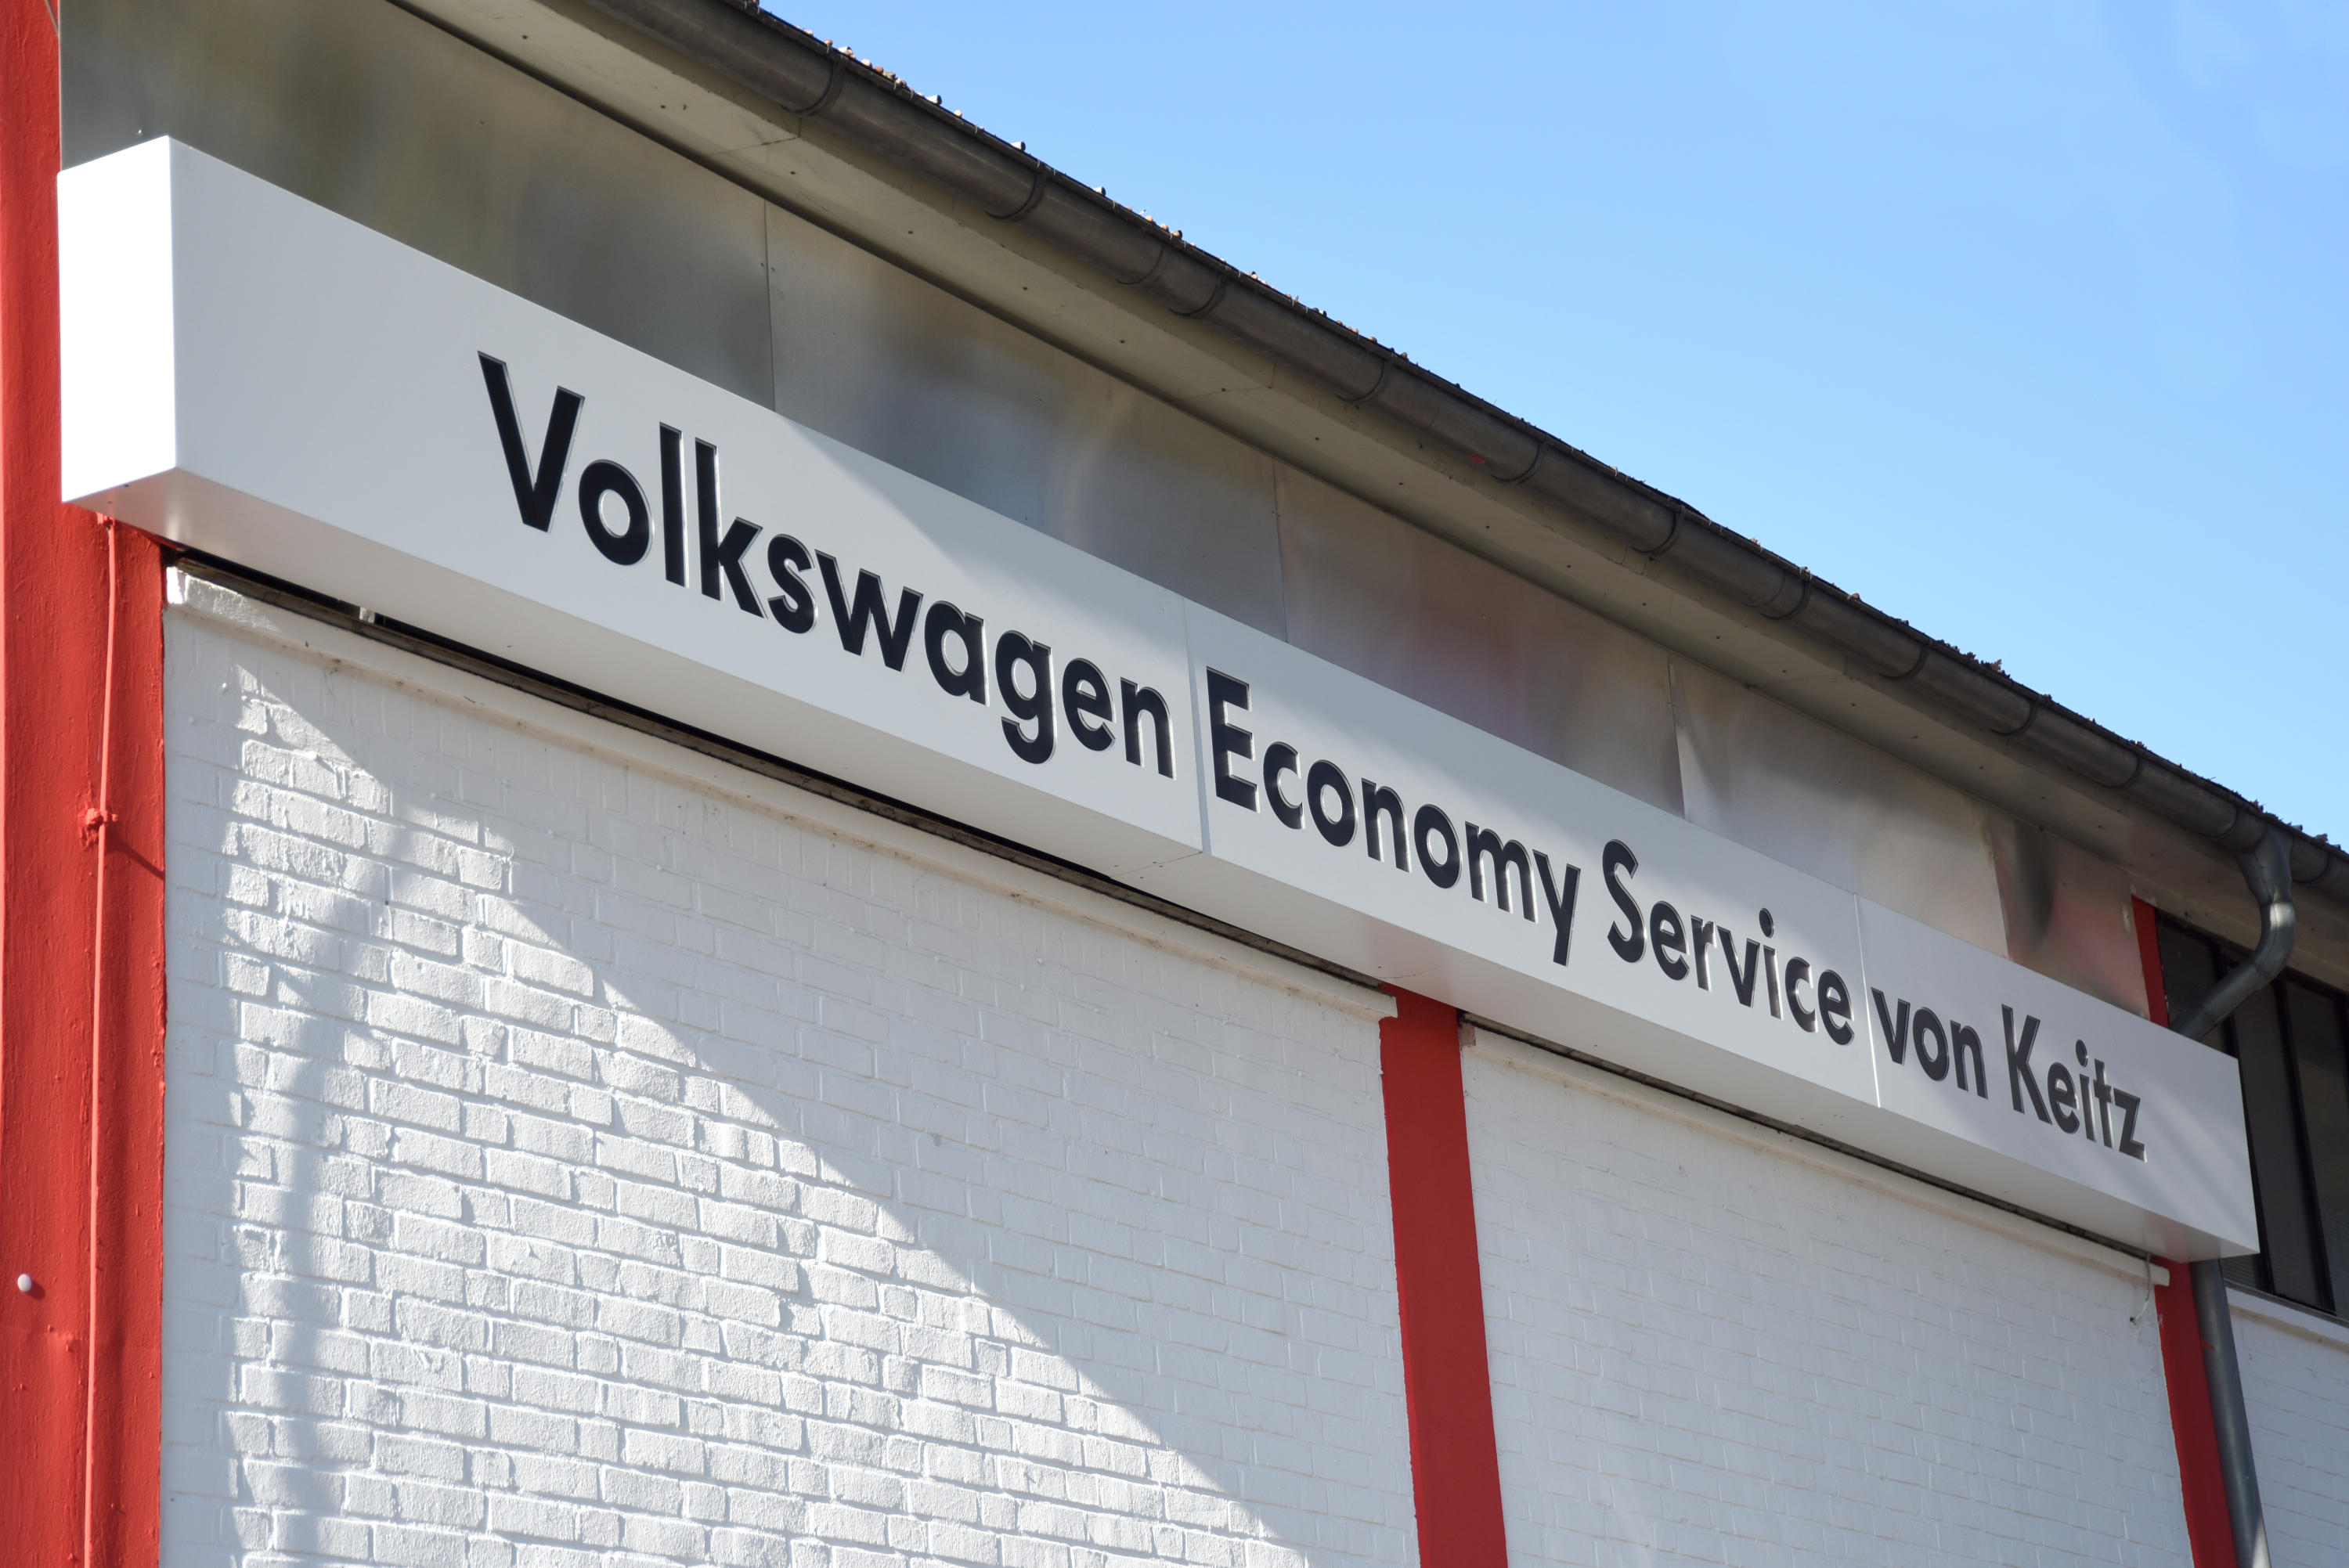 Bilder Volkswagen Economy Service von Keitz GmbH & Co. KG